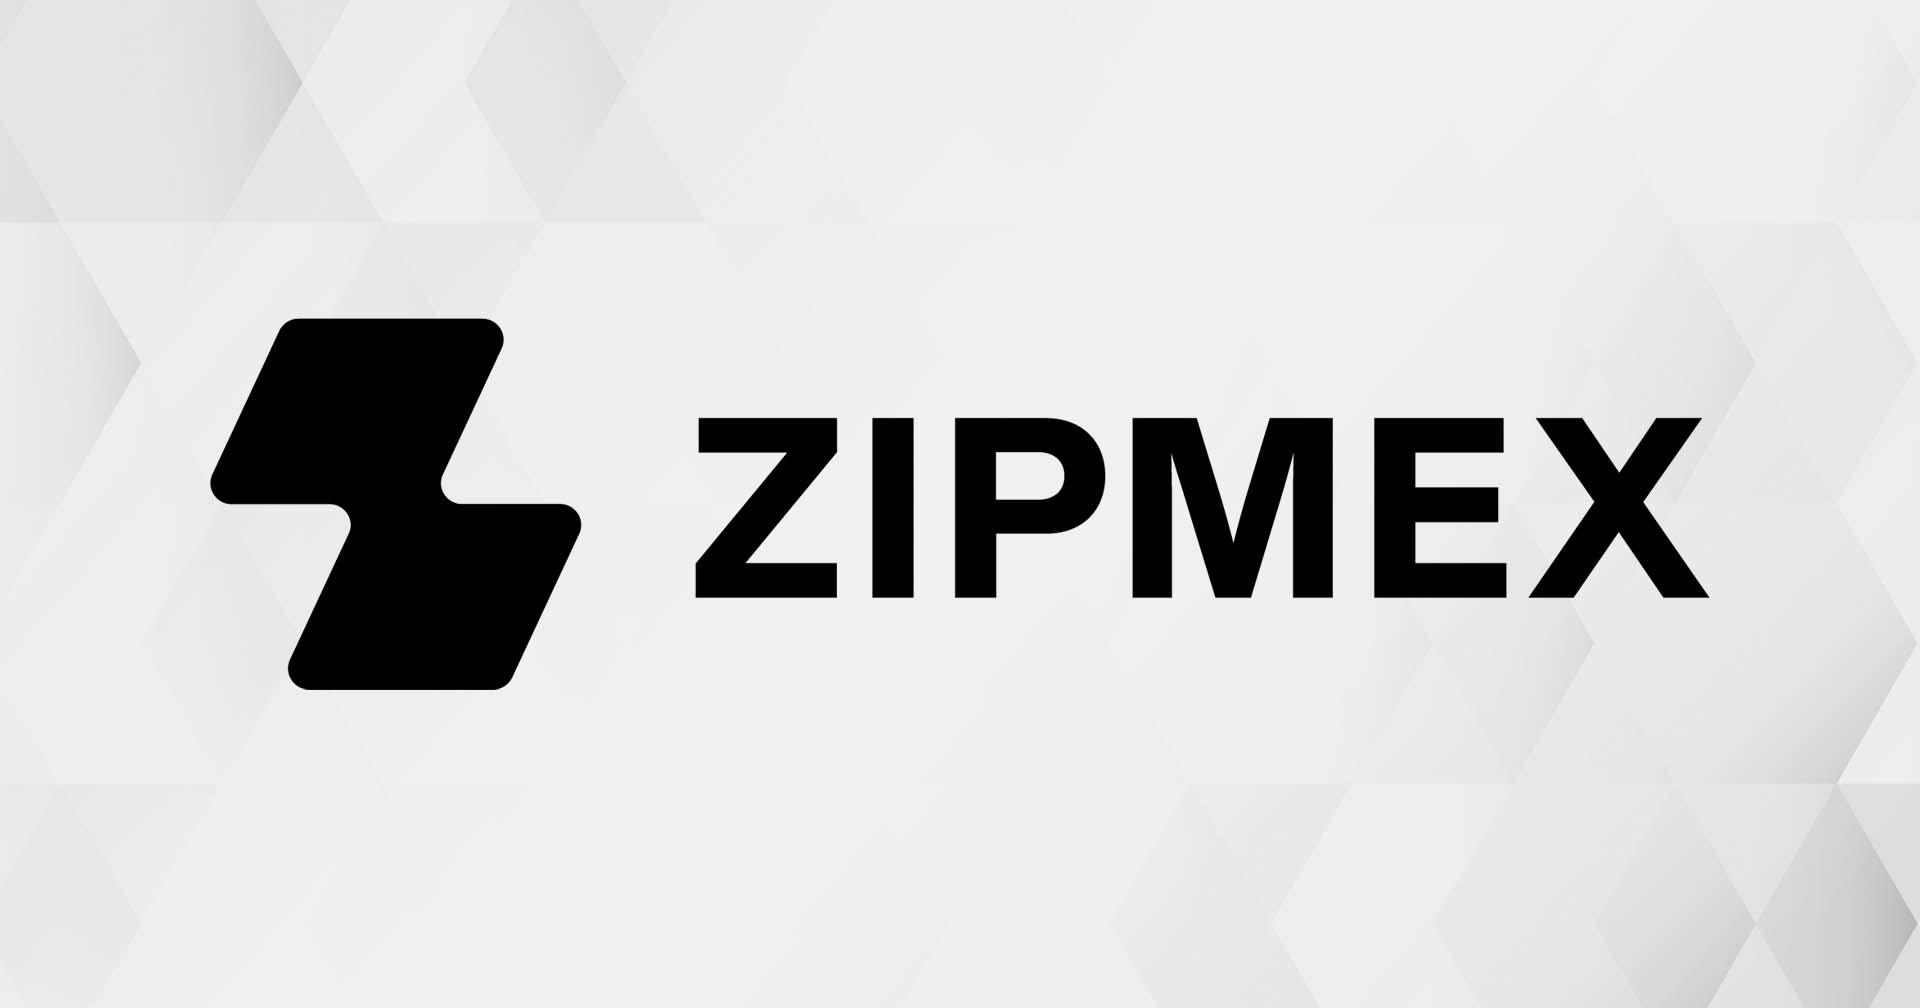 สรุปไลฟ์ Zipmex ใกล้ปิดดีลระดมทุน – เตรียมจัด Townhall 14 ก.ย. นี้